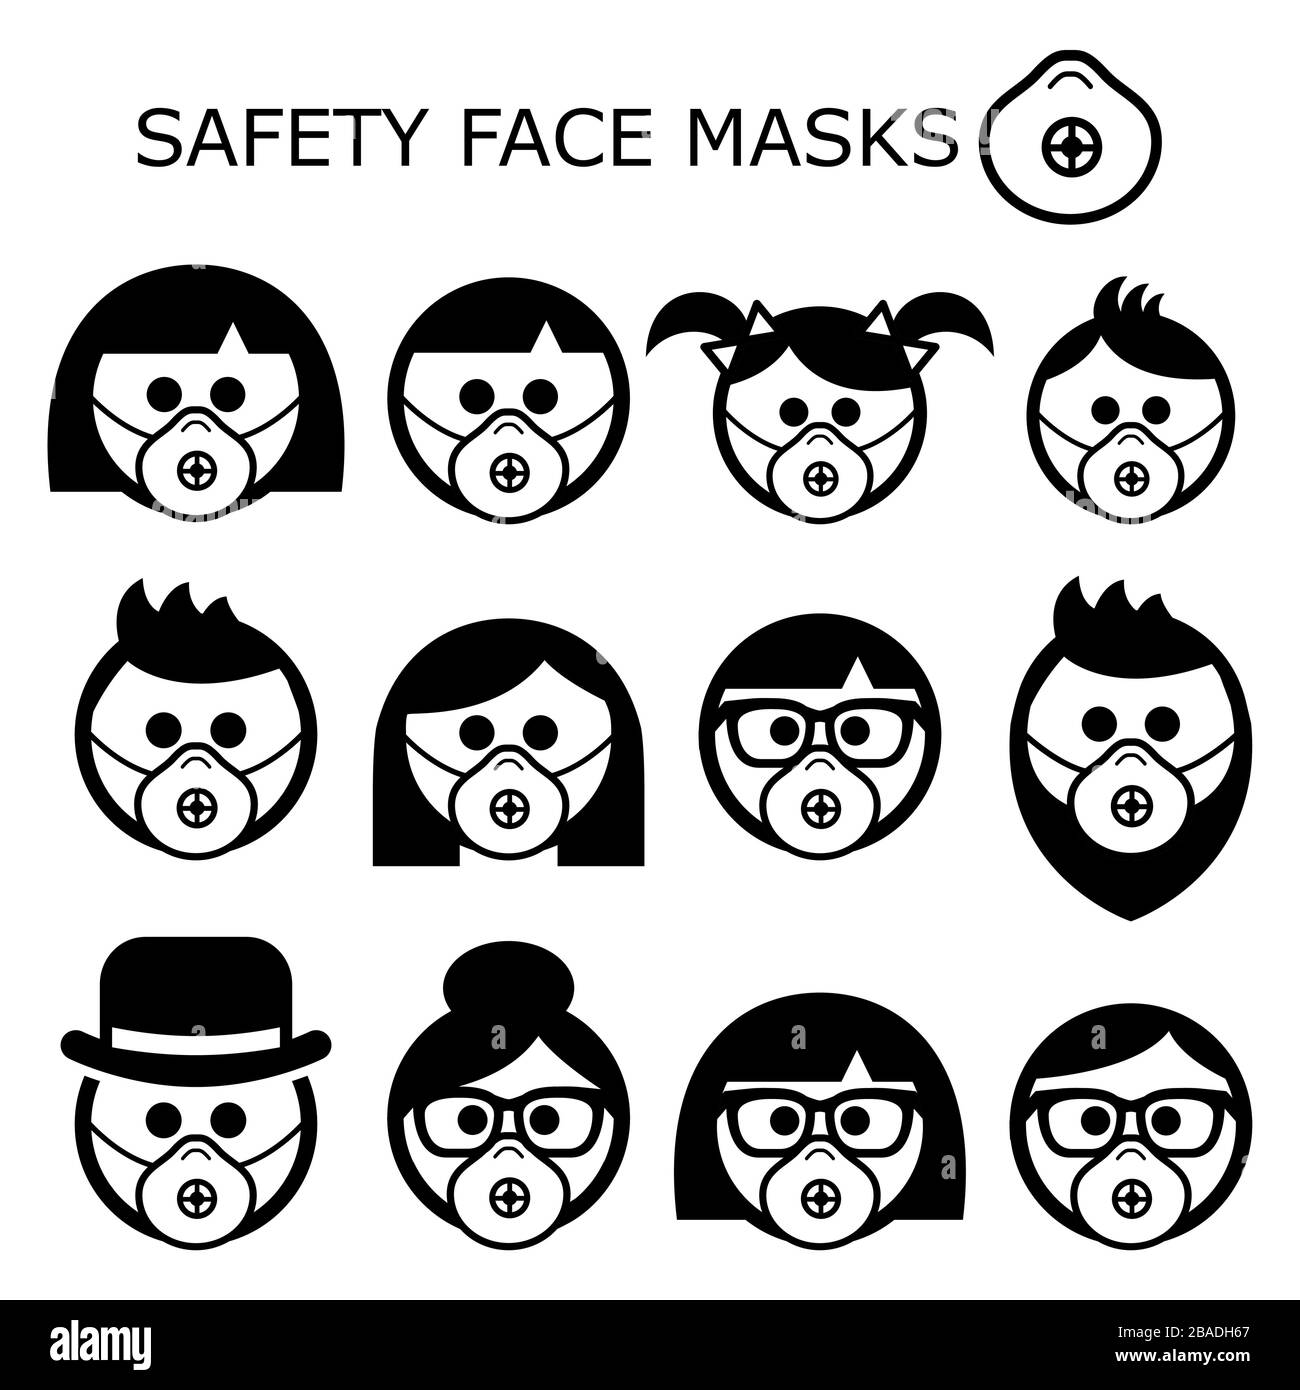 Les personnes portant des masques de sécurité sous forme d'icônes vectorielles (adultes, enfants, aînés, masques portés pour prévenir les maladies, virus, pollution de l'air, air contaminé) Illustration de Vecteur